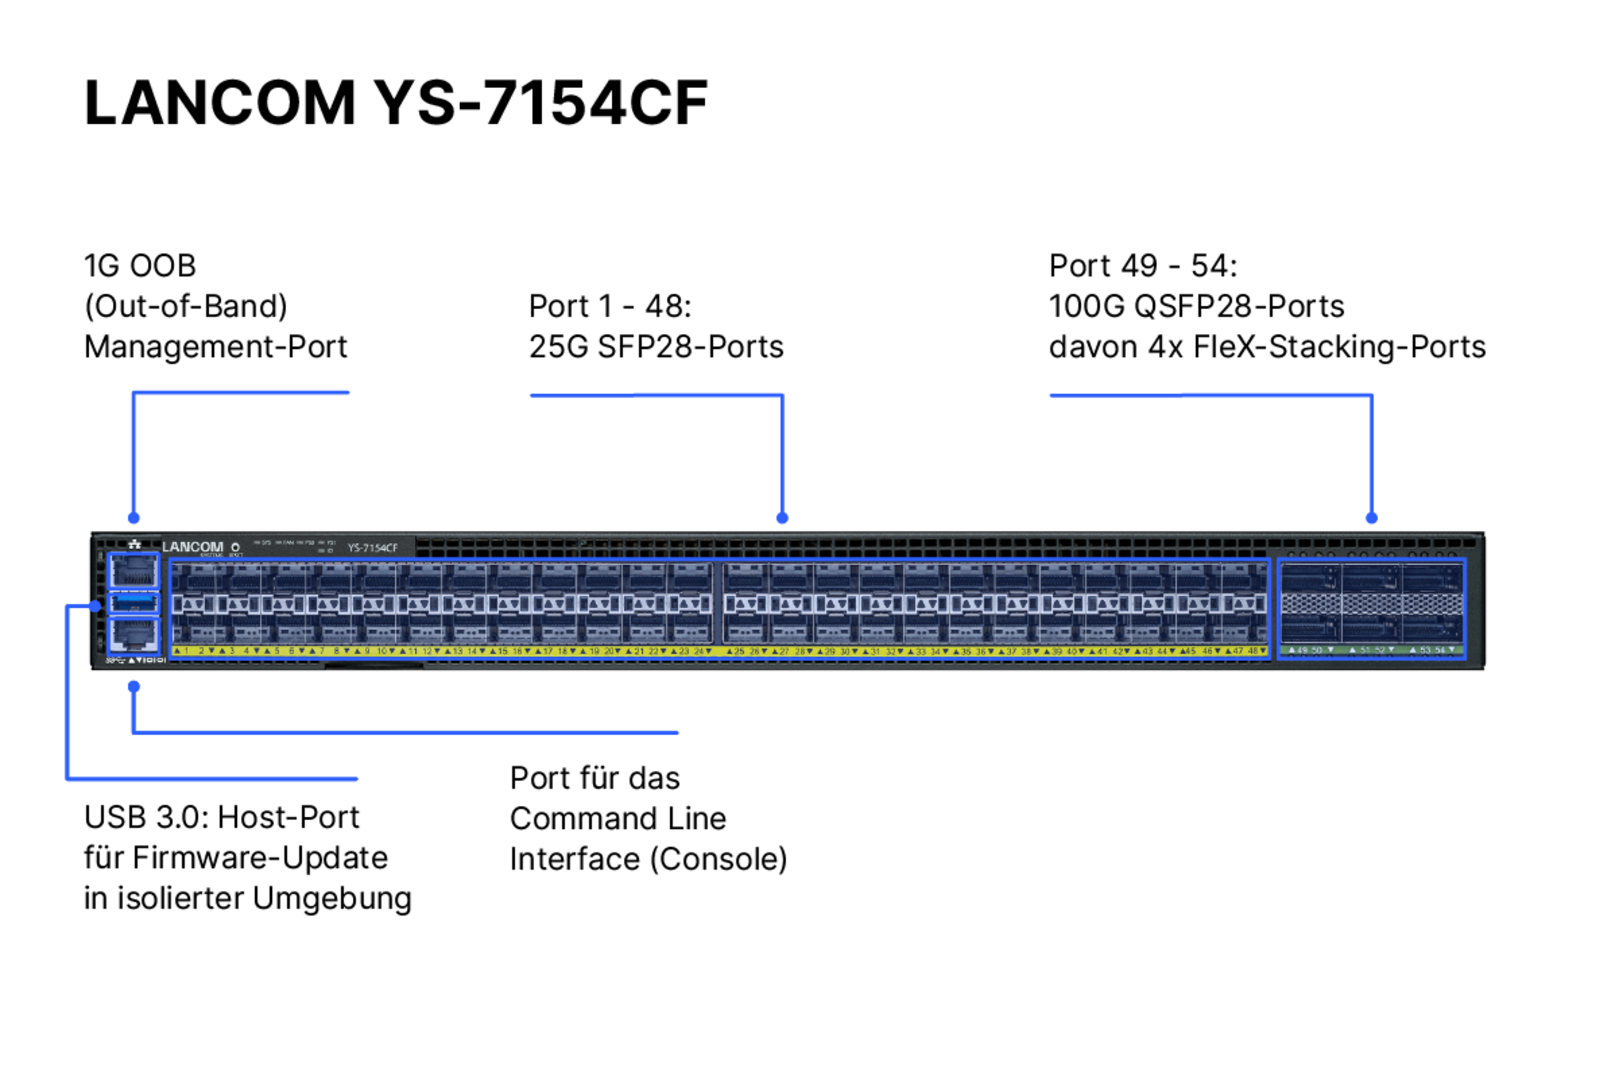 Produktfoto des LANCOM YS-7154CF mit Beschriftung der Portkonfigurationen